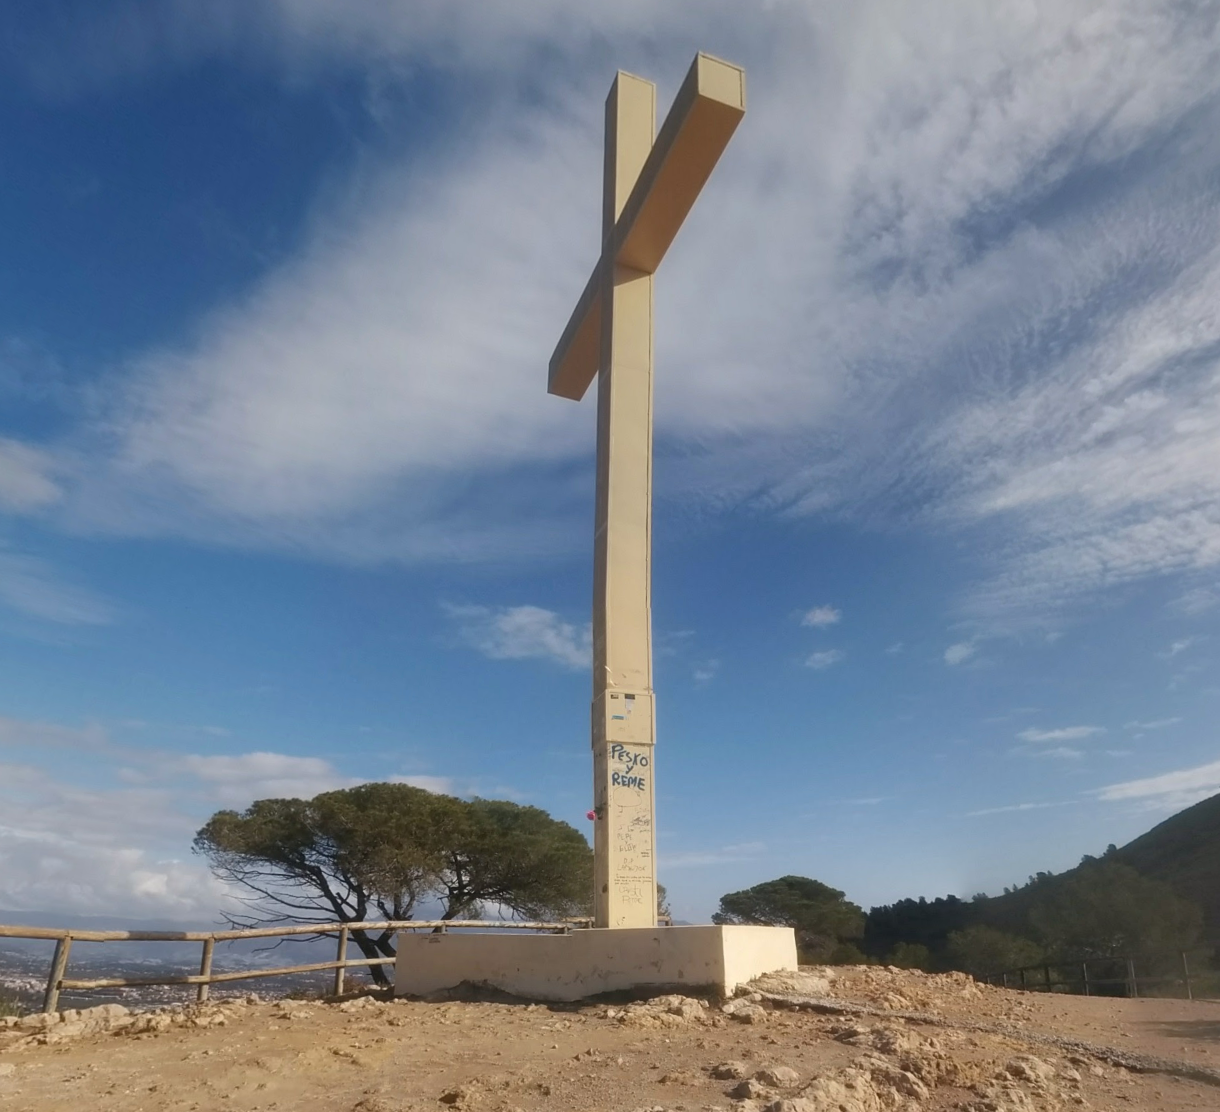 La Creu de Benidorm by Google Earth